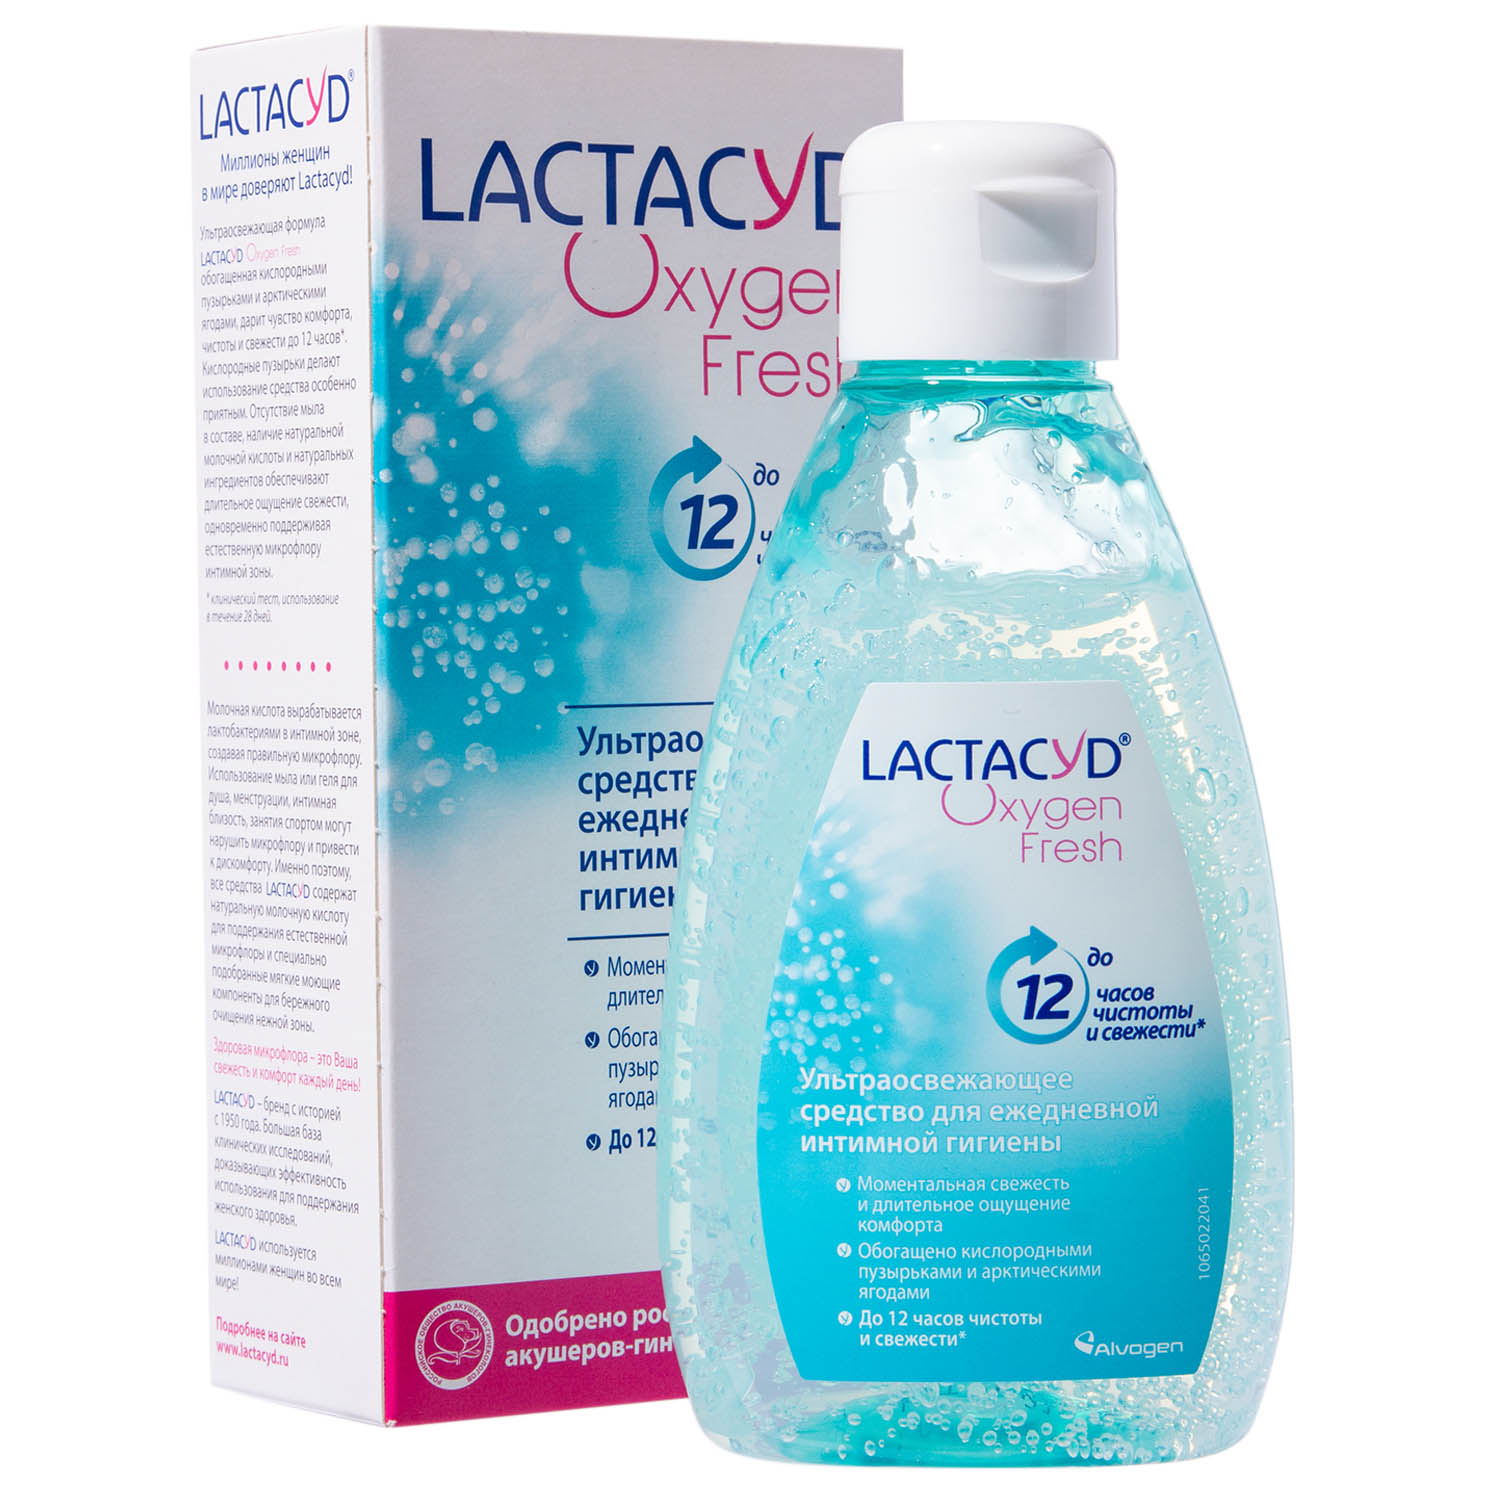 Lactacyd Гель для интимной гигиены "Кислородная